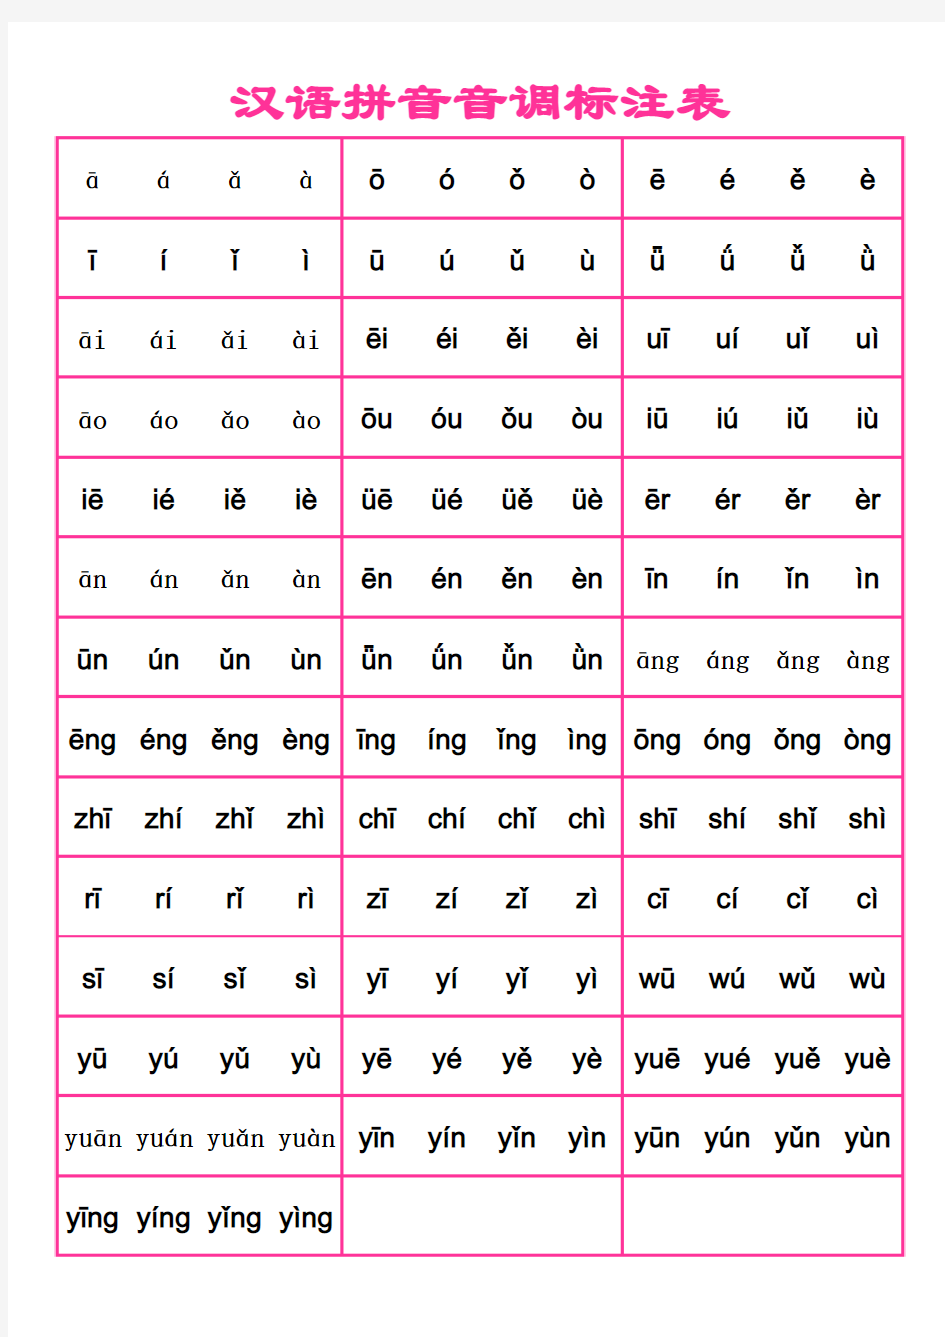 汉语拼音音调标注表